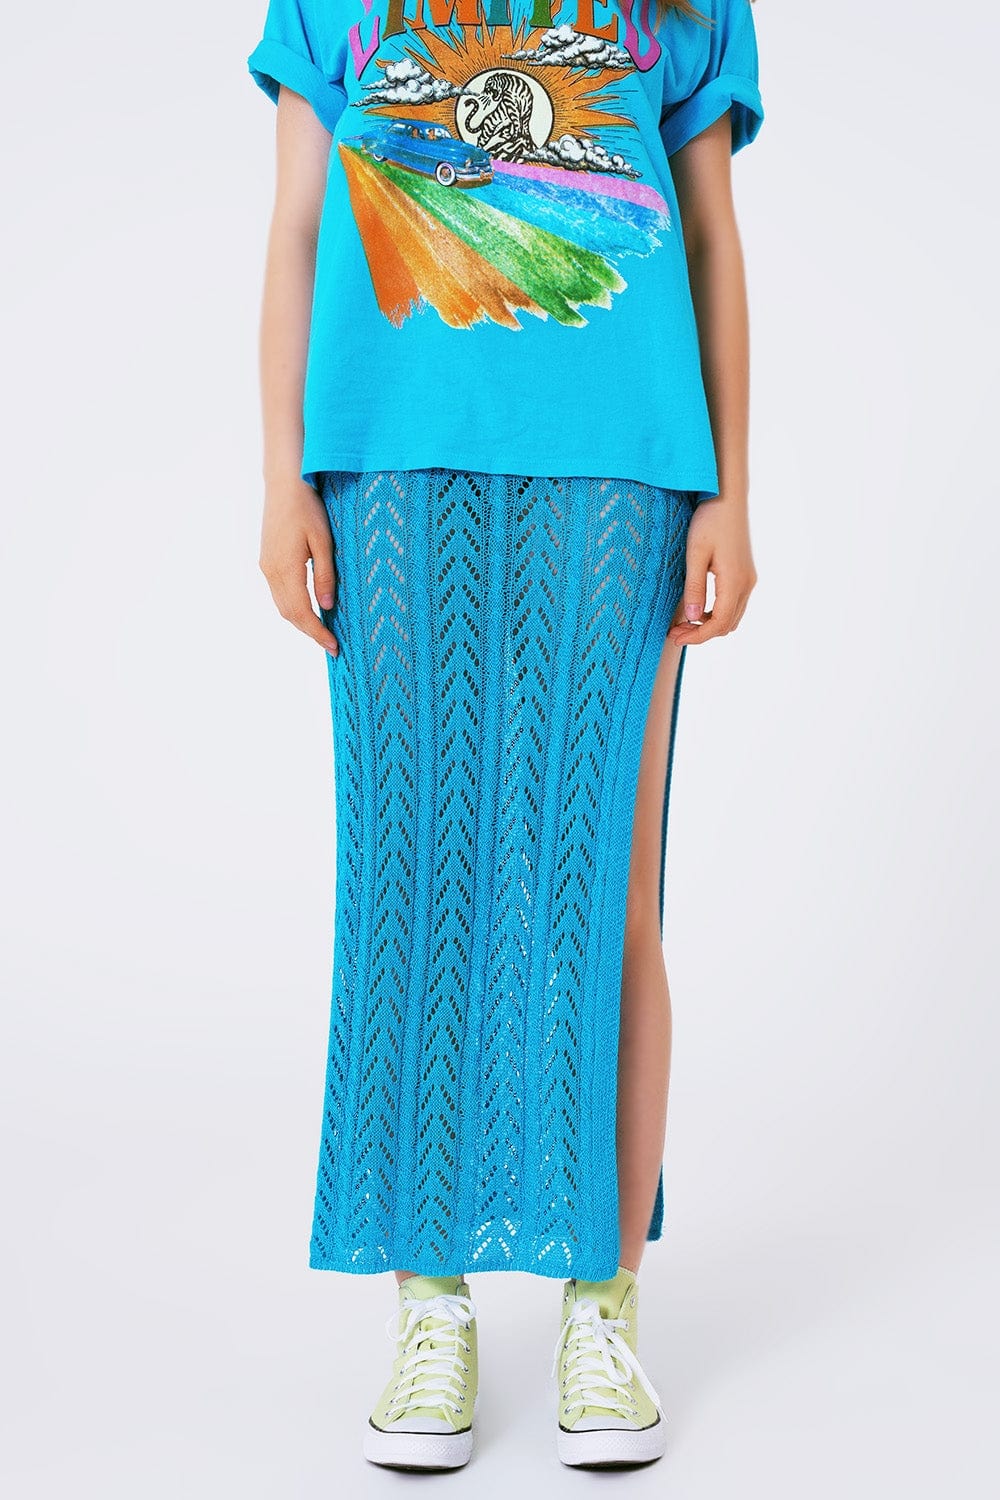 Q2 Women's Skirt One Size / Blue Crochet Maxi Skirt In Blue